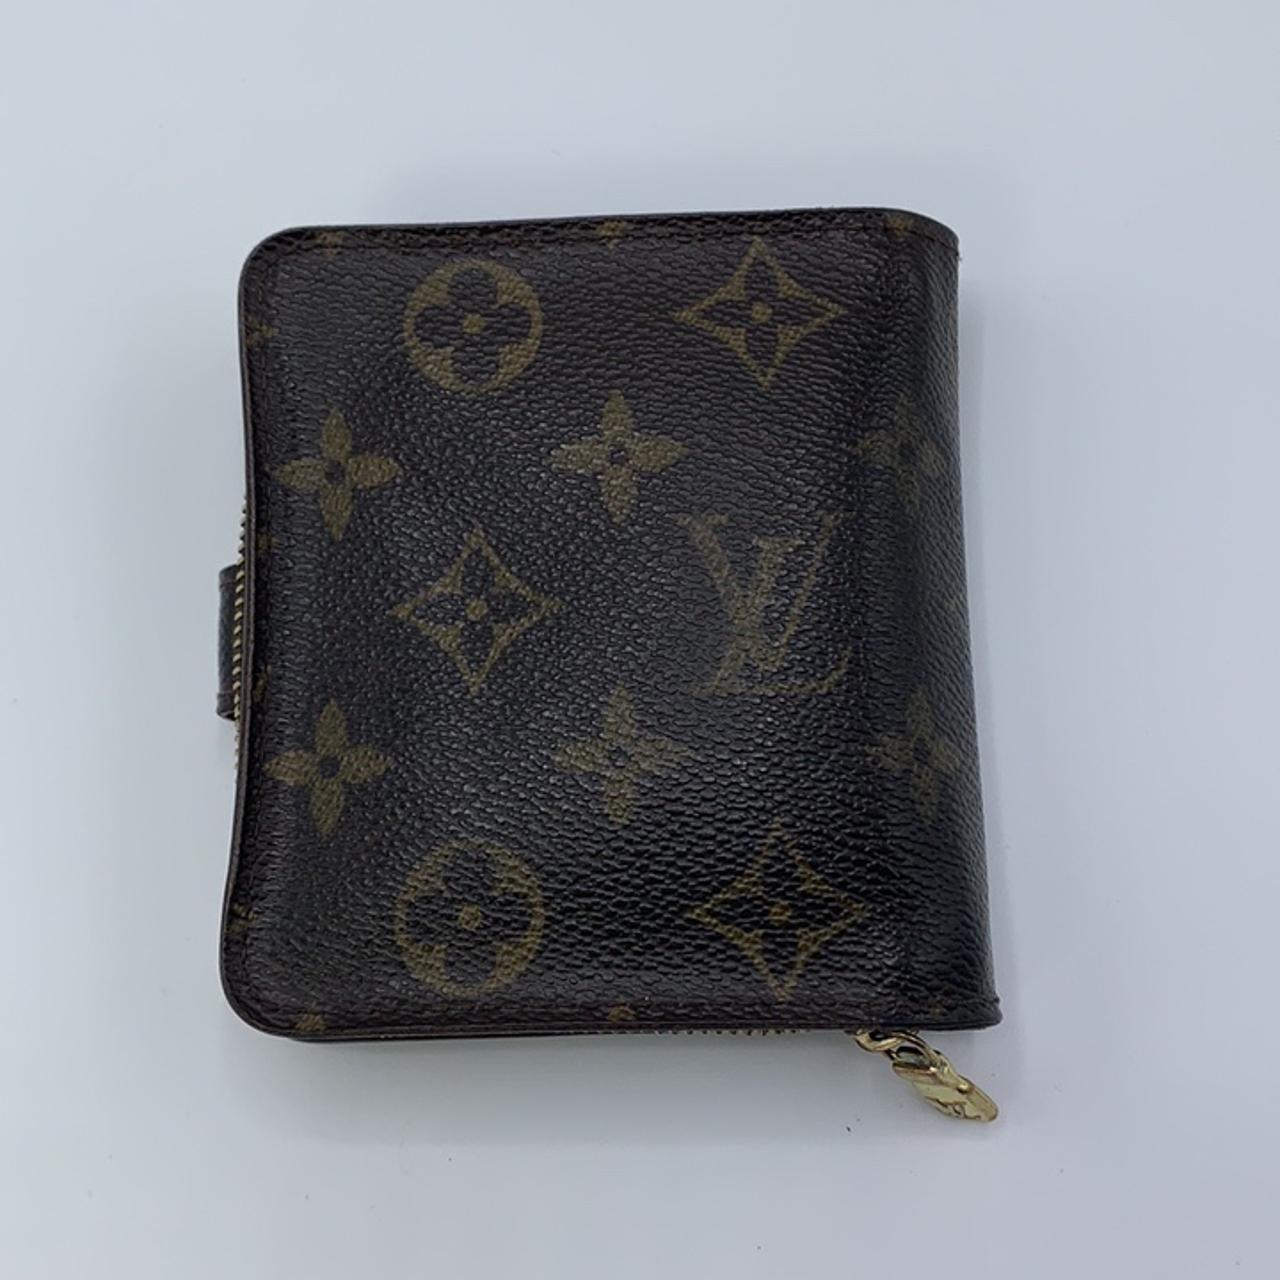 Vintage Louis Vuitton Porte Billets Compact Wallet - Depop